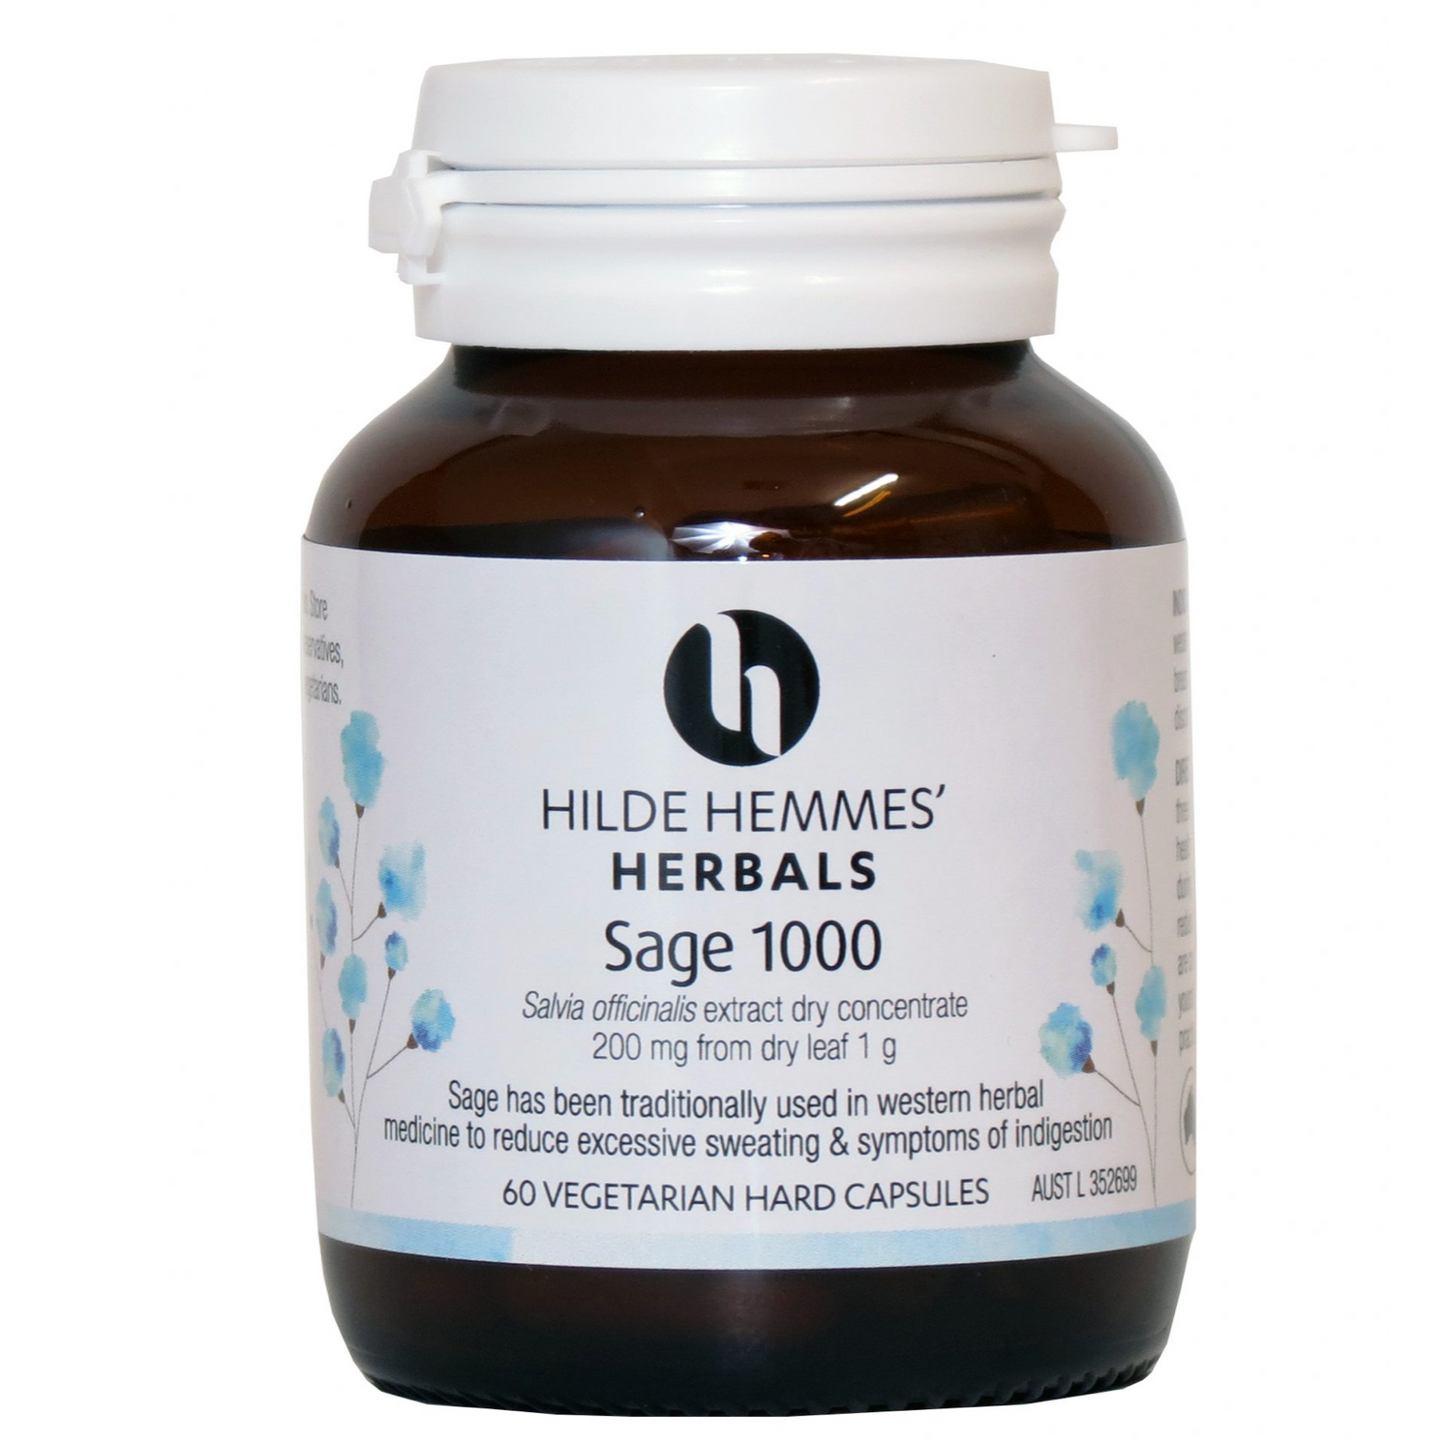 Hilde Hemmes Herbal's 60 Vegan Capsules, Sage 1000mg